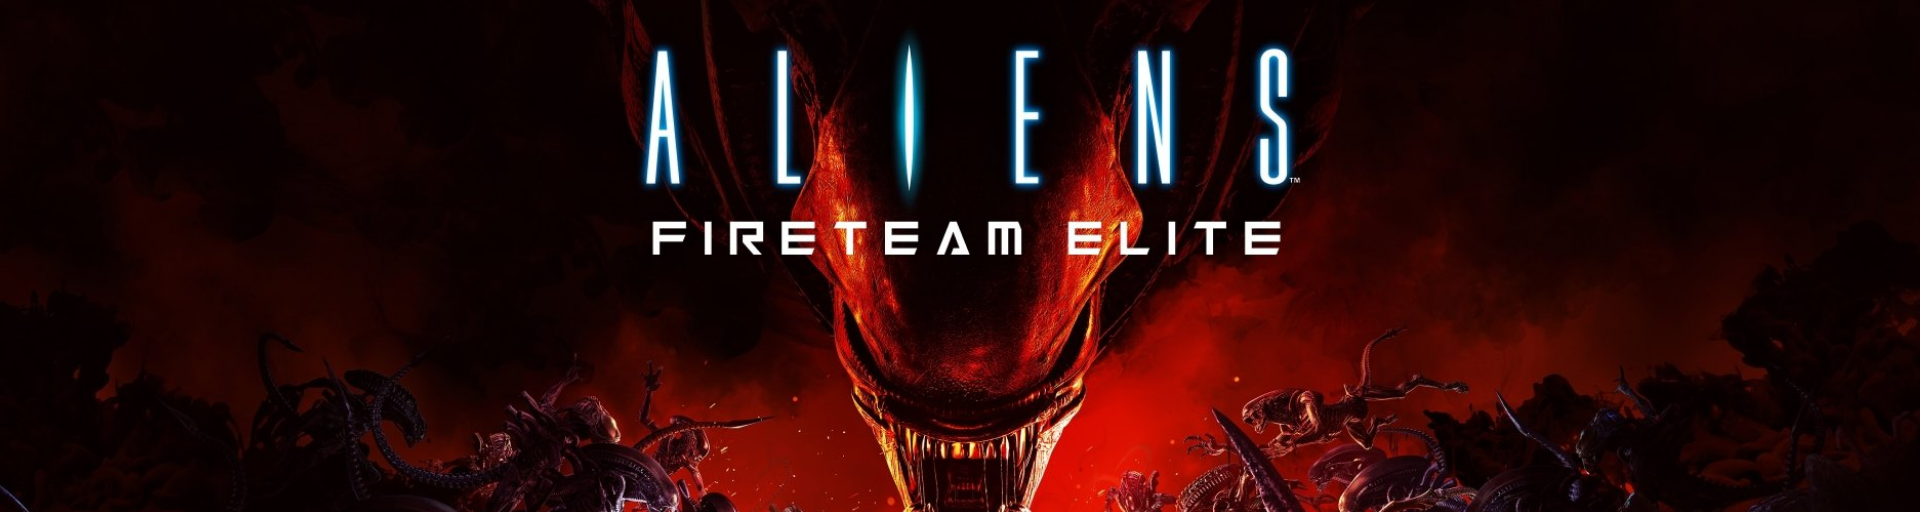 Header image for Aliens: Fireteam Elite